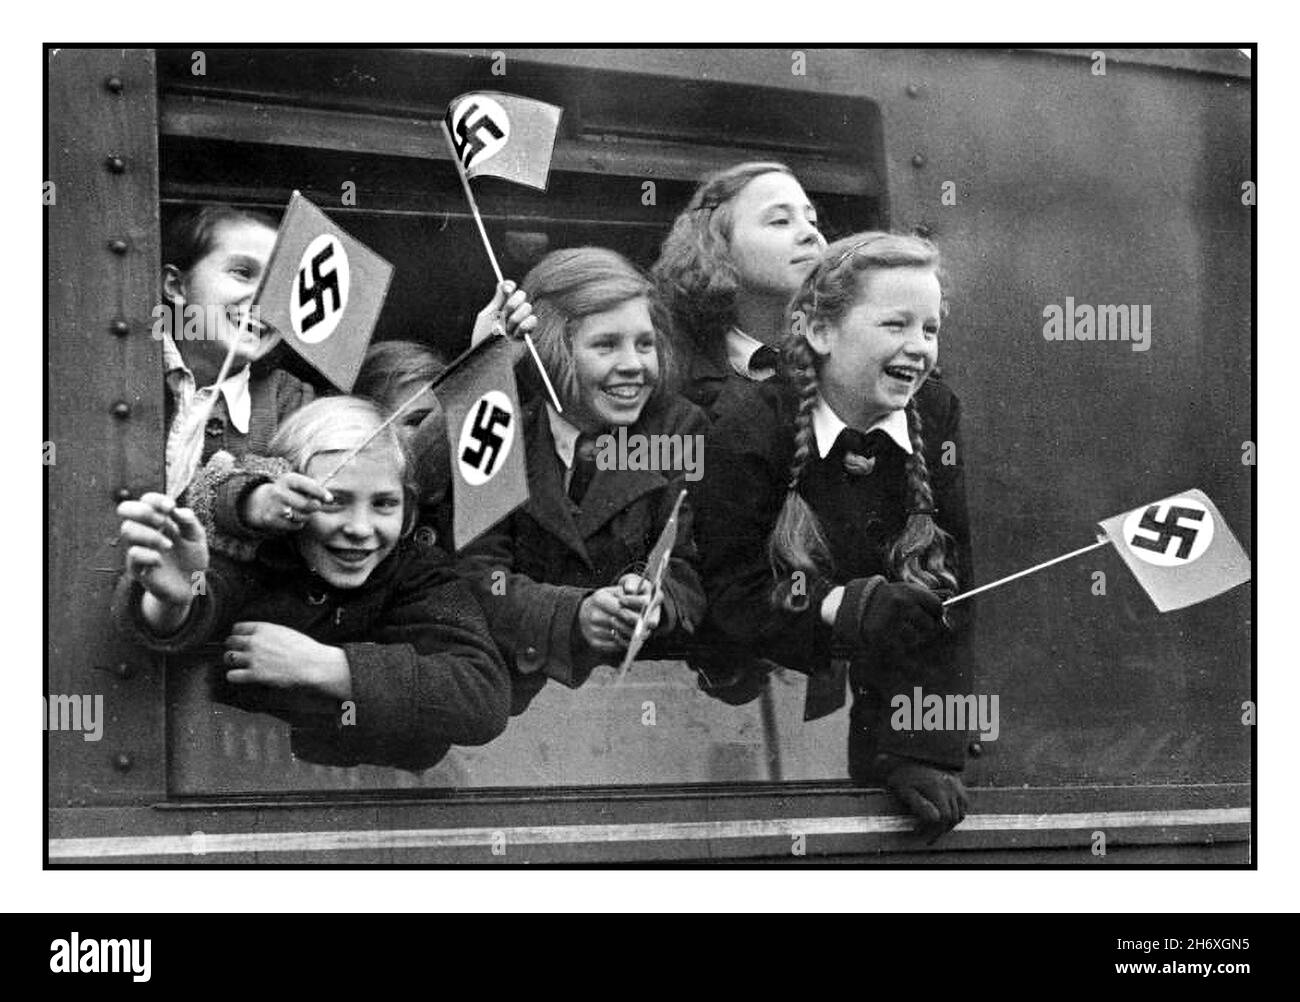 WW2 GERMANIA NAZISTA EVACUAZIONE BAMBINI KINDERTRANSPORTE KINDERLANDVERSCHICKUNG WW2 1940s evacuazione bambini in Germania durante la seconda guerra mondiale bambini tedeschi lasciare Berlino in un treno speciale 'Kindertransporte' sventolando bandiere naziste swastika nuovi trasporti giornalieri di bambini da tutte le zone della popolazione nella capitale del Reich come parte della terra Deportazione in altri distretti del Reich tedesco nazista, per proteggerli dai bombardamenti alleati DEI BAMBINI TEDESCHI WW2 Kinder Transport Vintage WW2 Germania nazista ‘ Kinderlandverschickung’ Propaganda Poster dal 1942 al 1943. Bombardamento alleato delle città tedesche Foto Stock